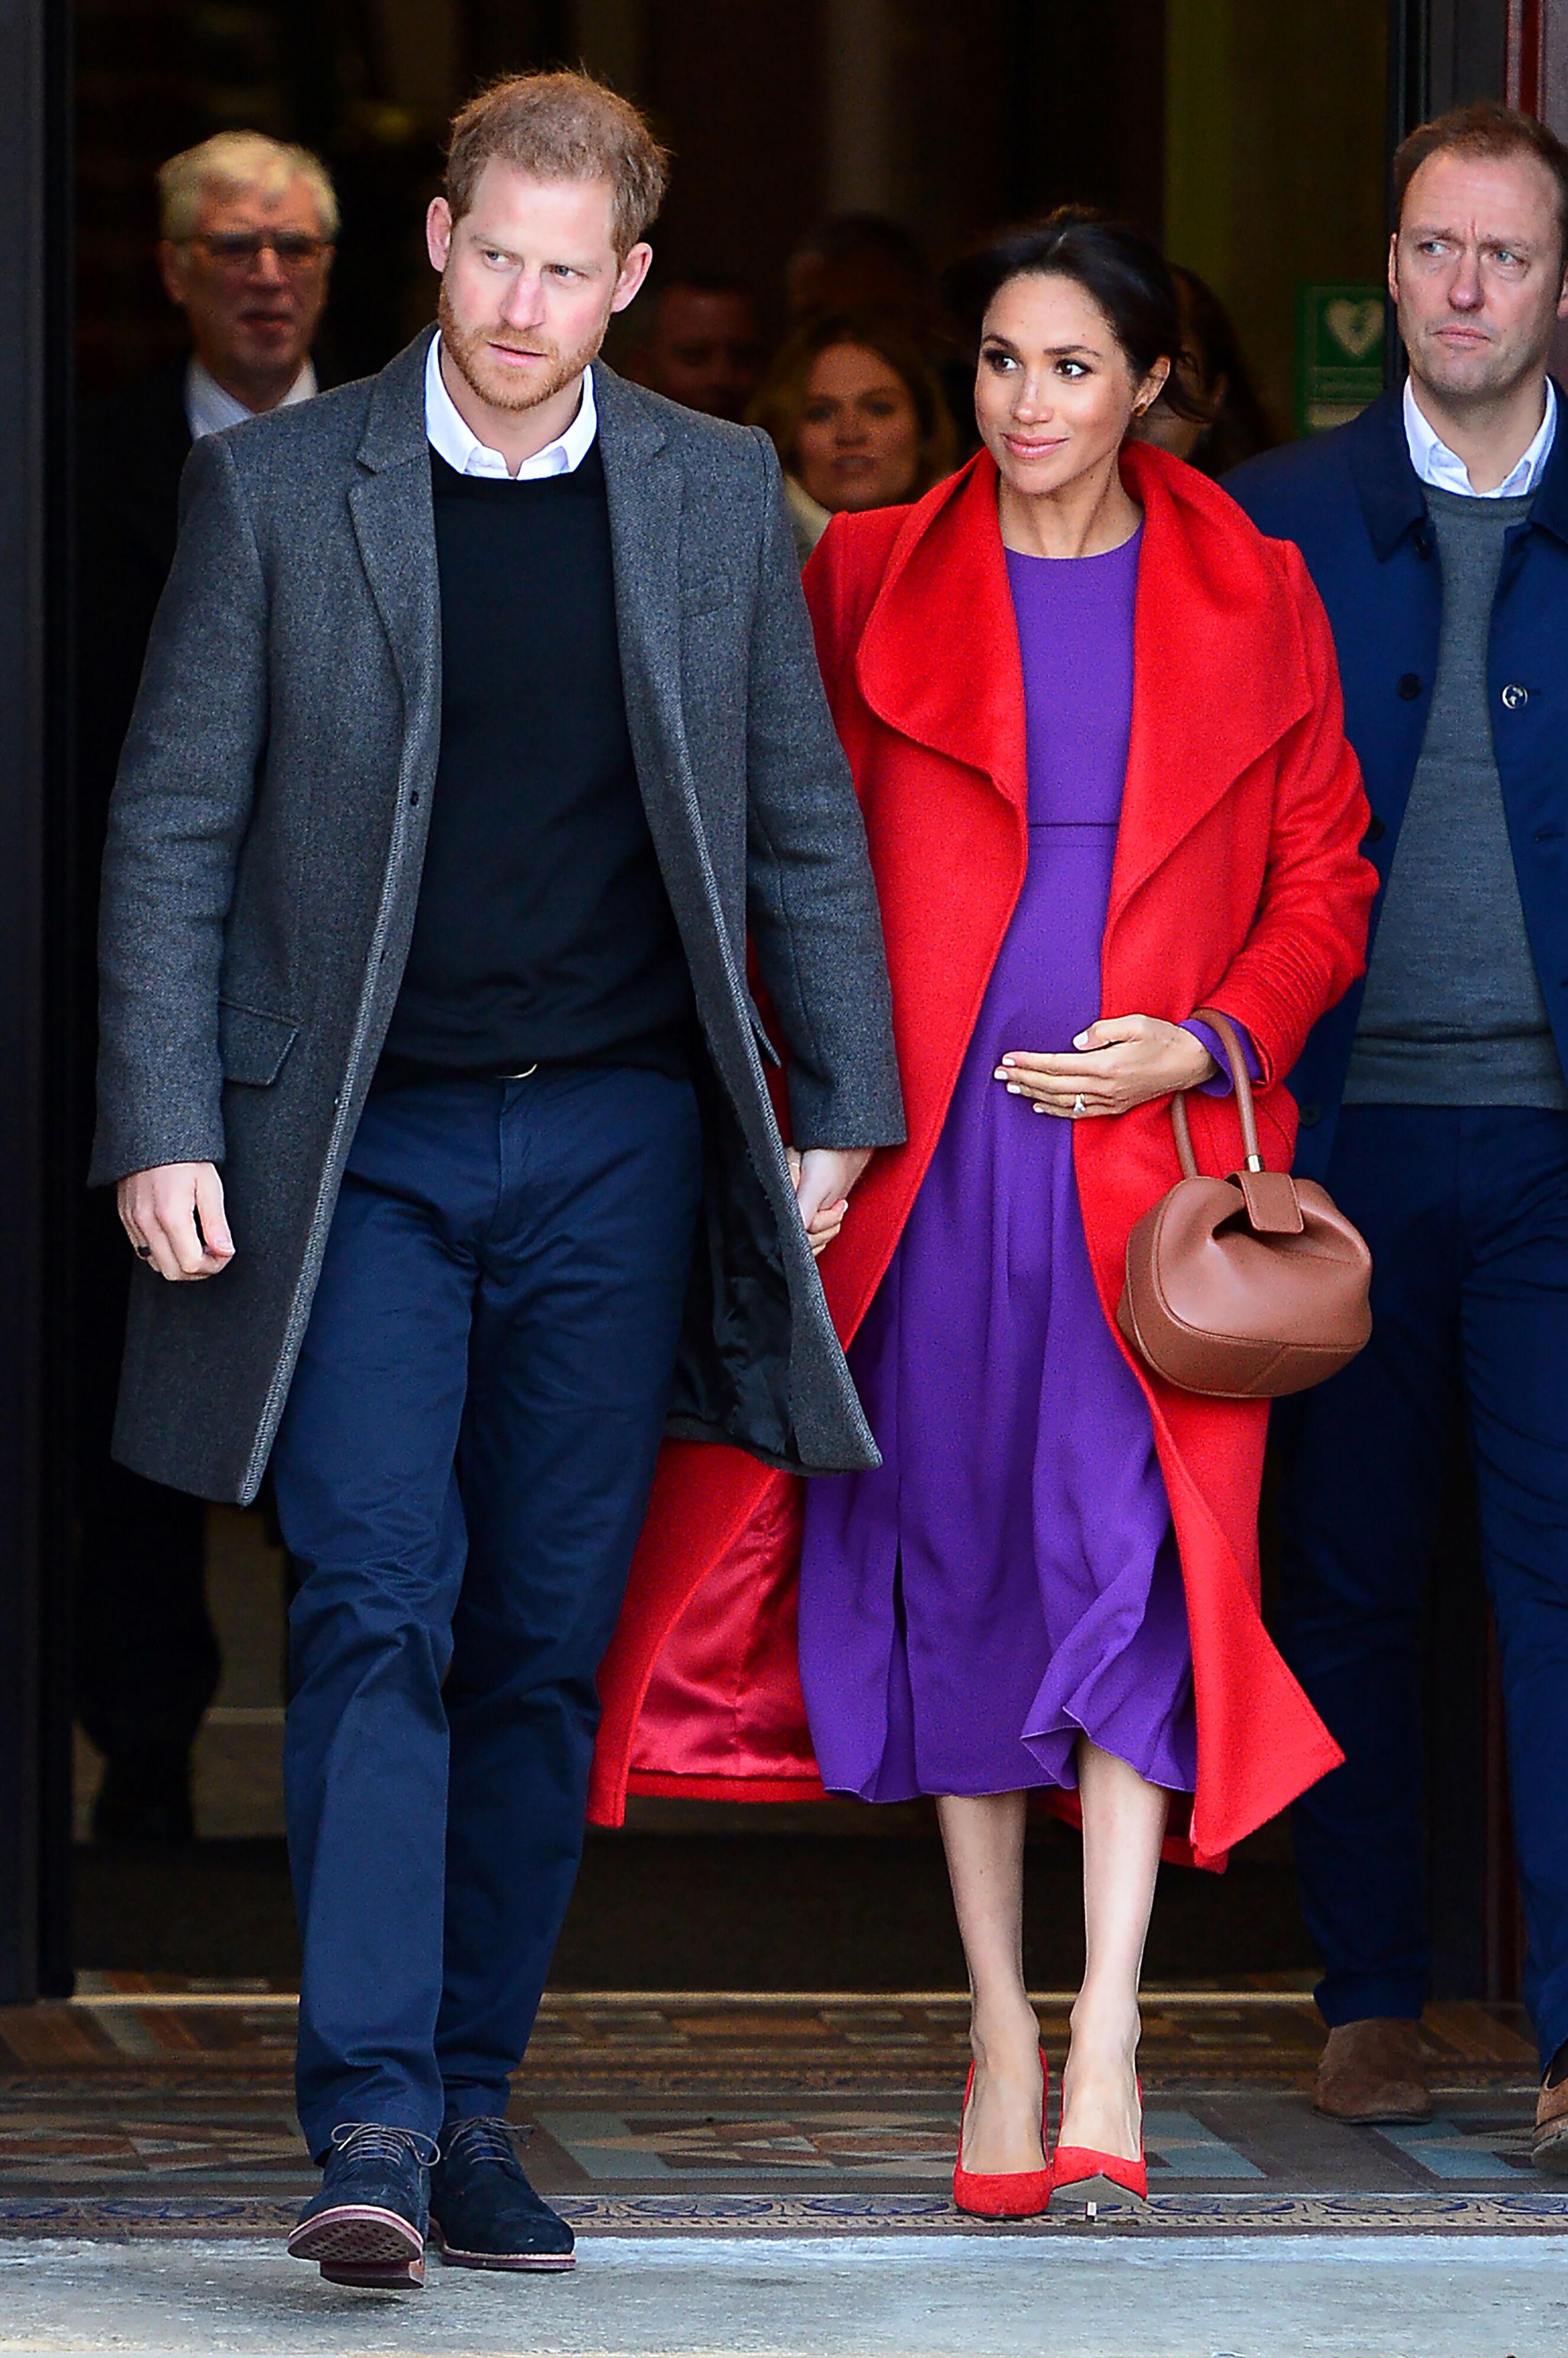  Le prince Harry, le duc de Sussex et Meghan, la duchesse de Sussex partent de l'hôtel de ville de Birkenhead le 14 janvier 2019 à Birkenhead, Angleterre | Photo: Getty Images